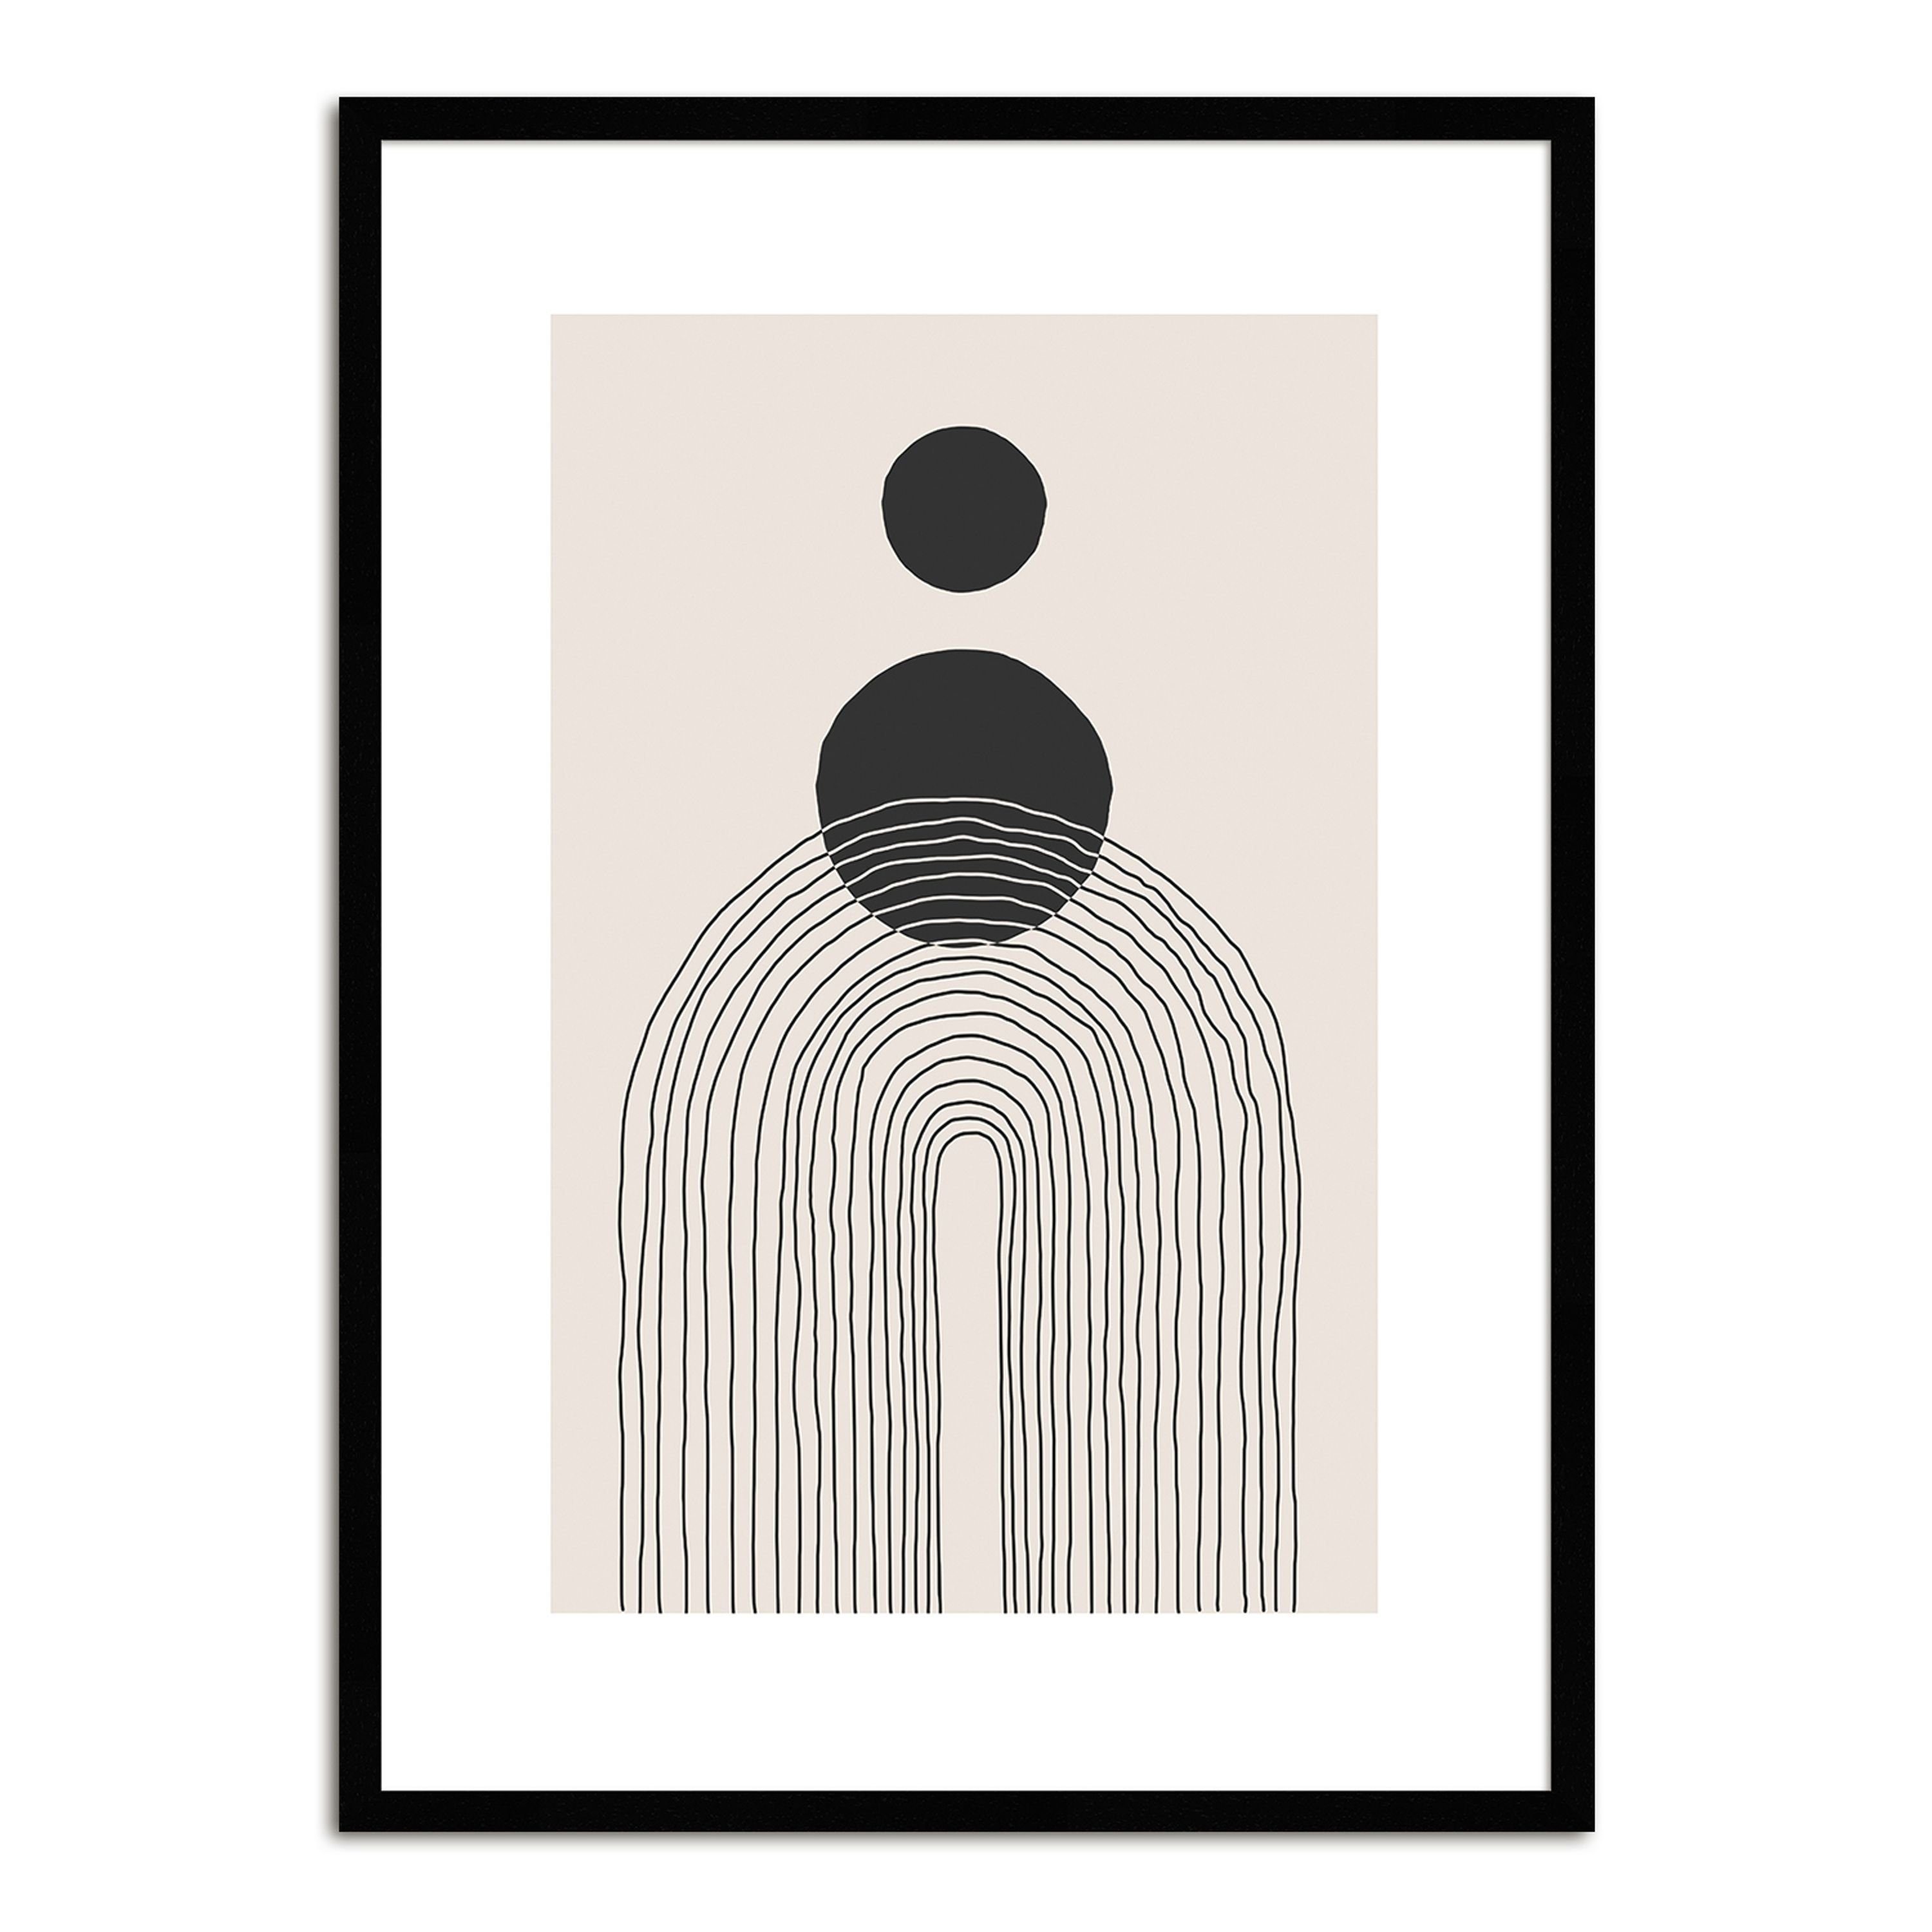 artissimo Bild mit gerahmt mit schwarz-weiß, Rahmen skandinavische Muster Bild / / 51x71cm Holz-Rahmen schwarz-weiß Design-Poster